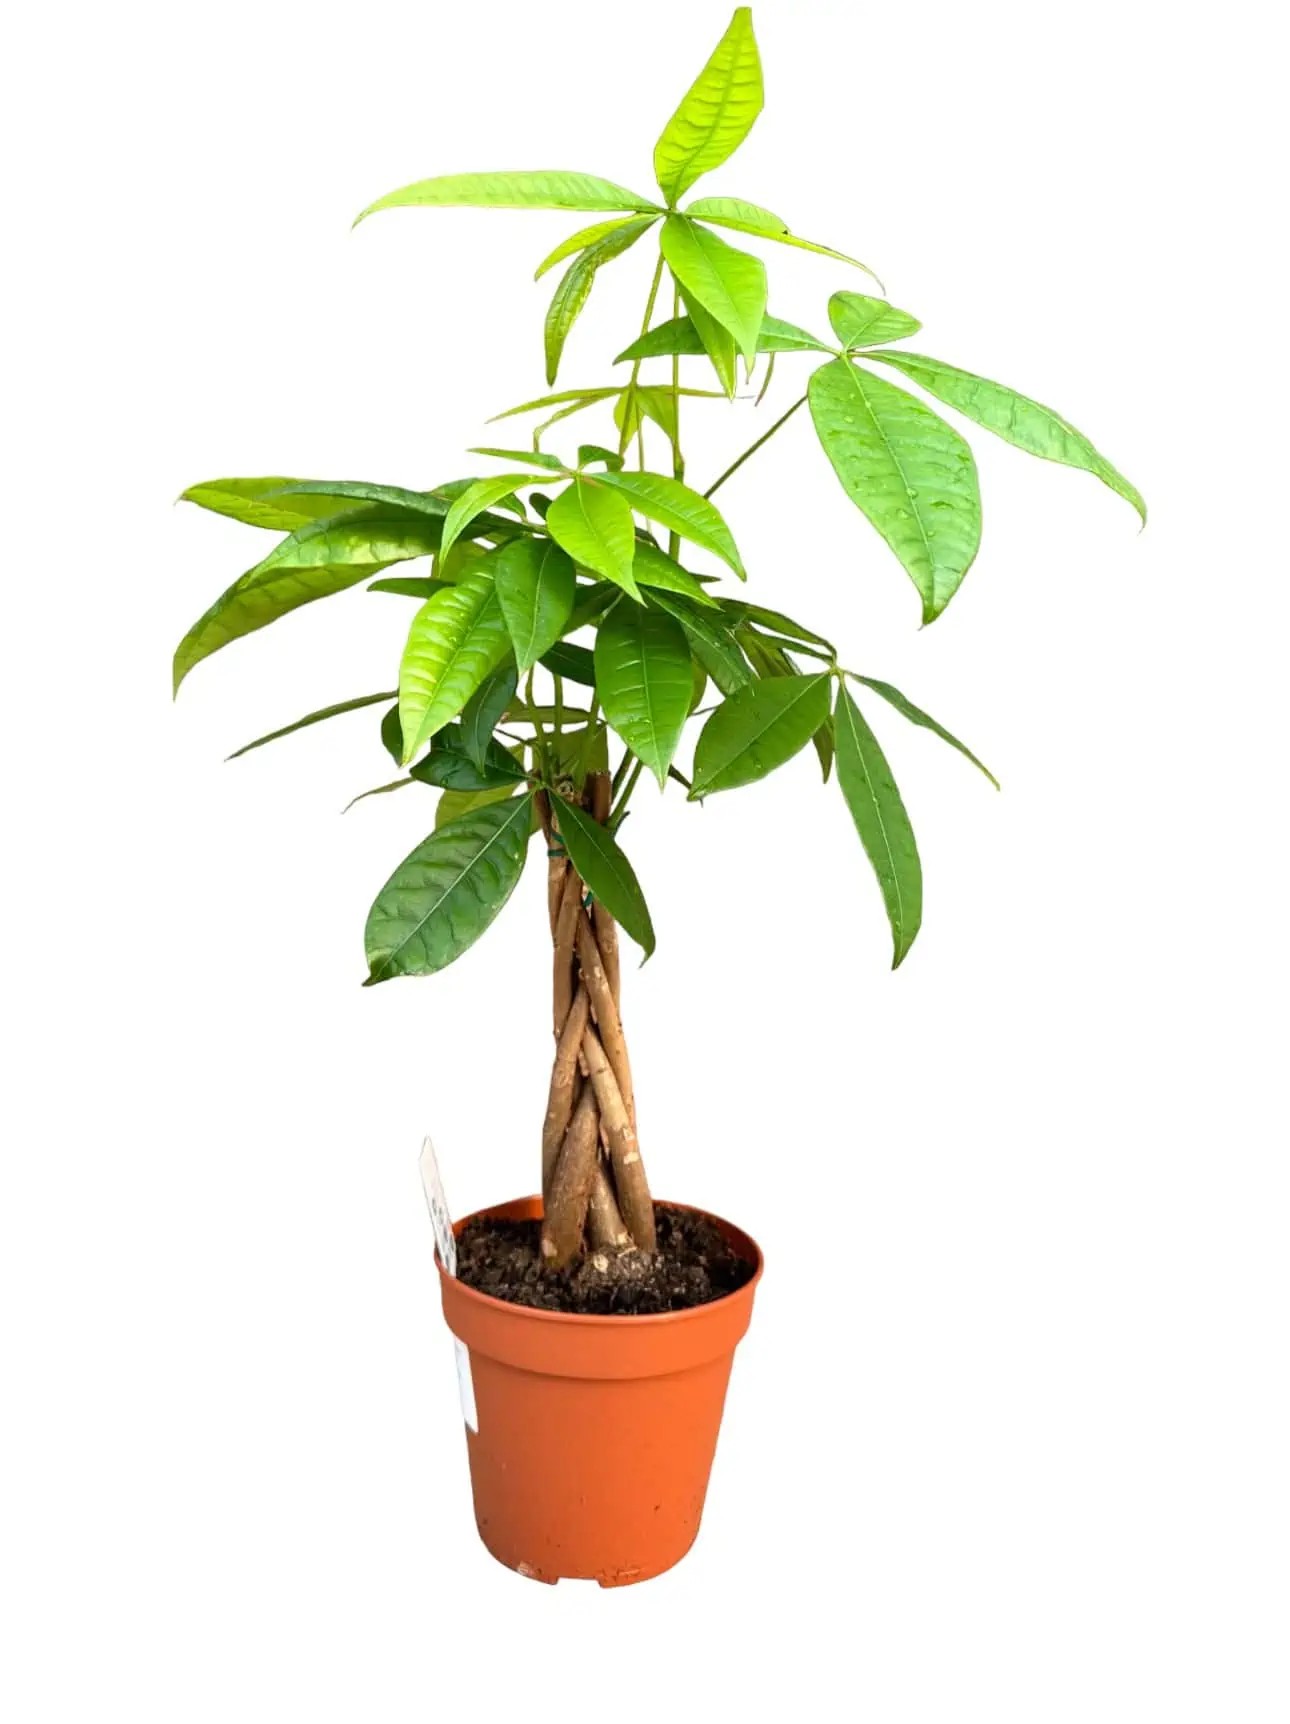 55-60 cm pachira (money tree)